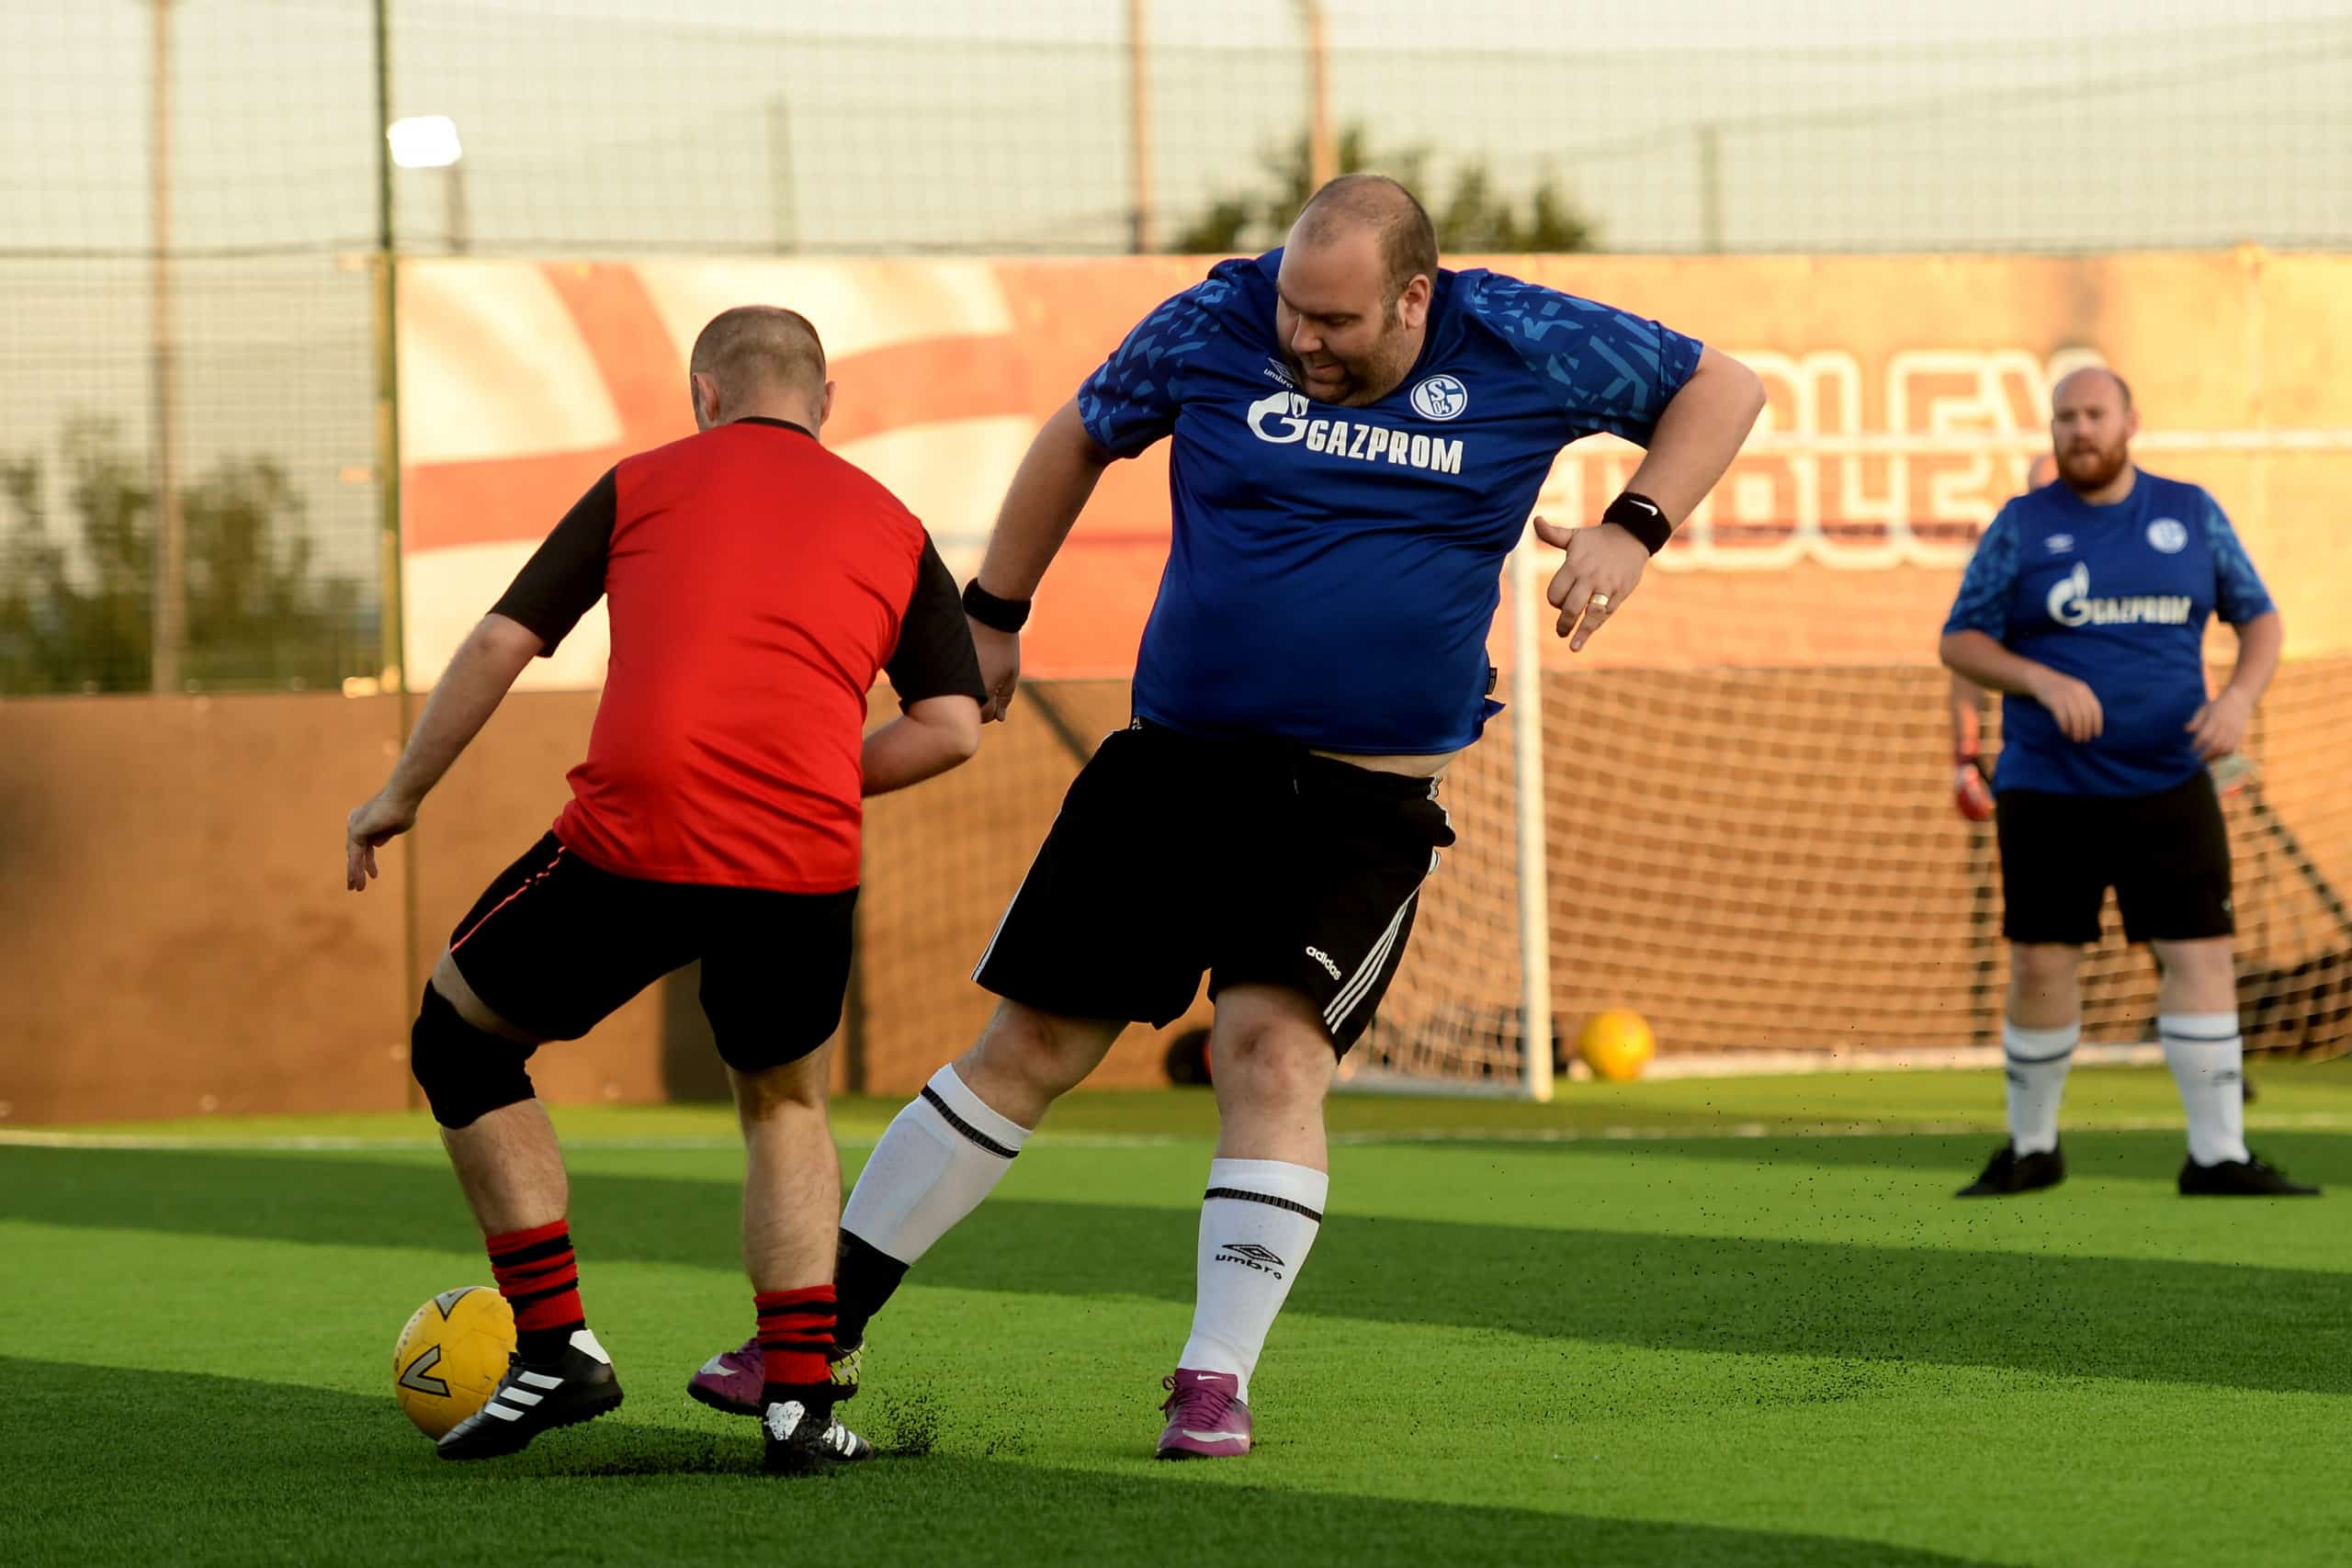 MAN v FAT Dartford - Goals Soccer Center, Dartford - 15/06/2021 - Photo: Richard Blaxall / Photerior